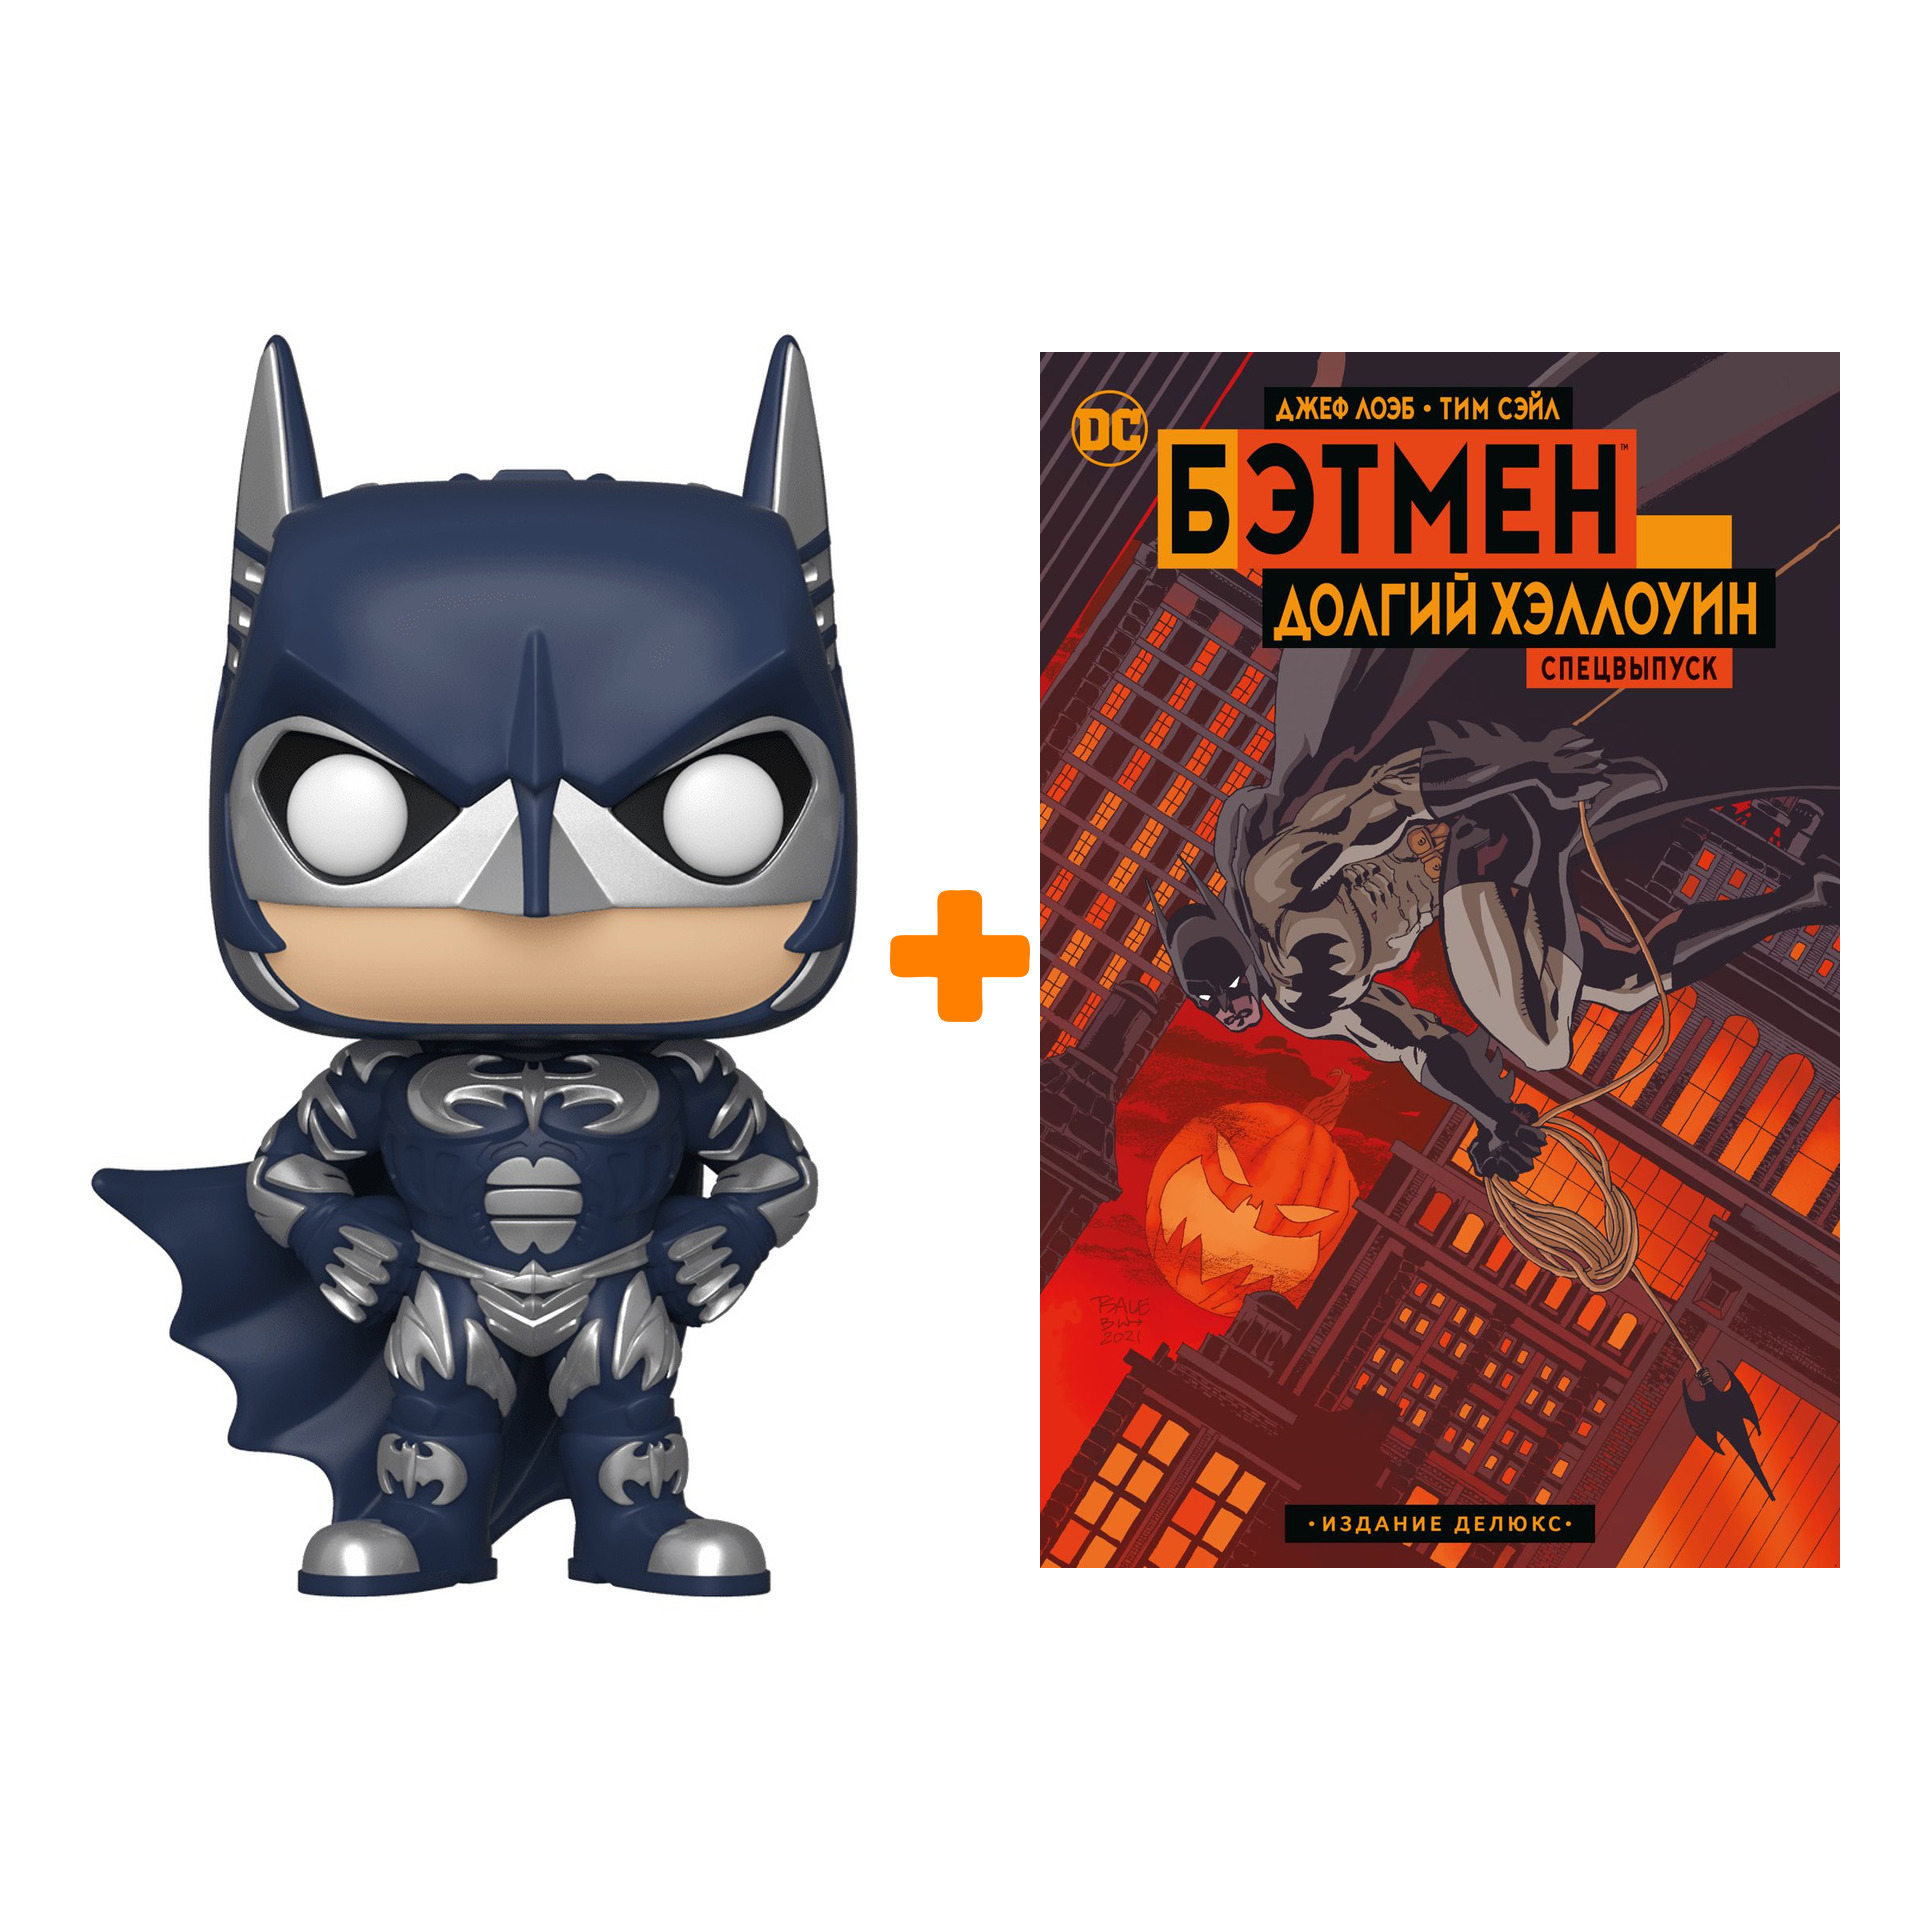 Набор фигурка Batman 80 Years Batman 1997 + комикс Бэтмен Долгий Хэллоуин Делюкс